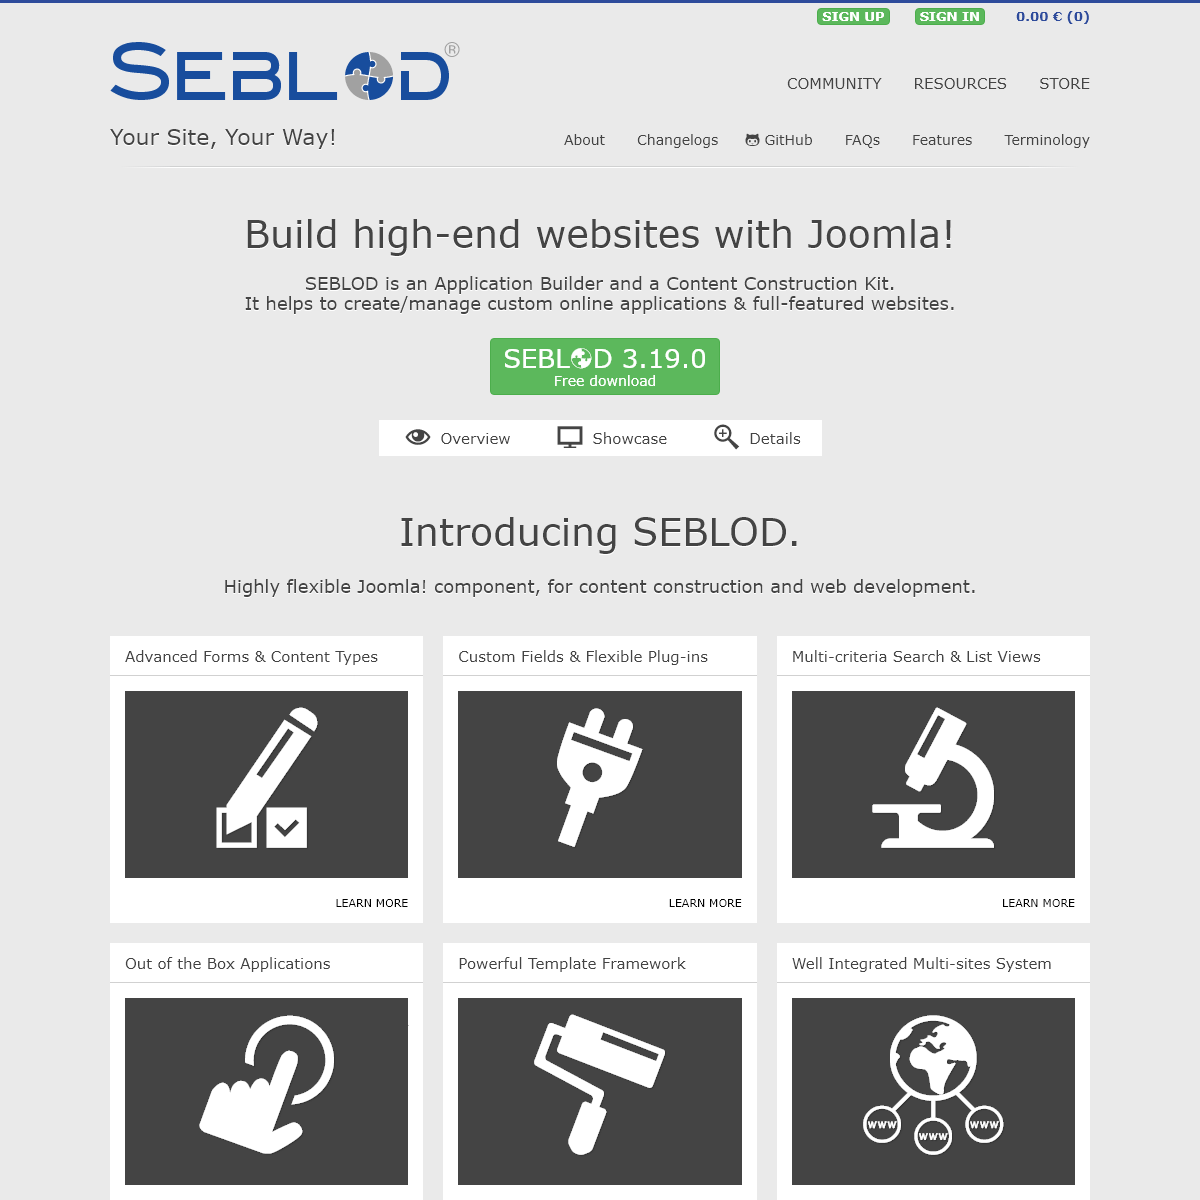 A complete backup of seblod.com